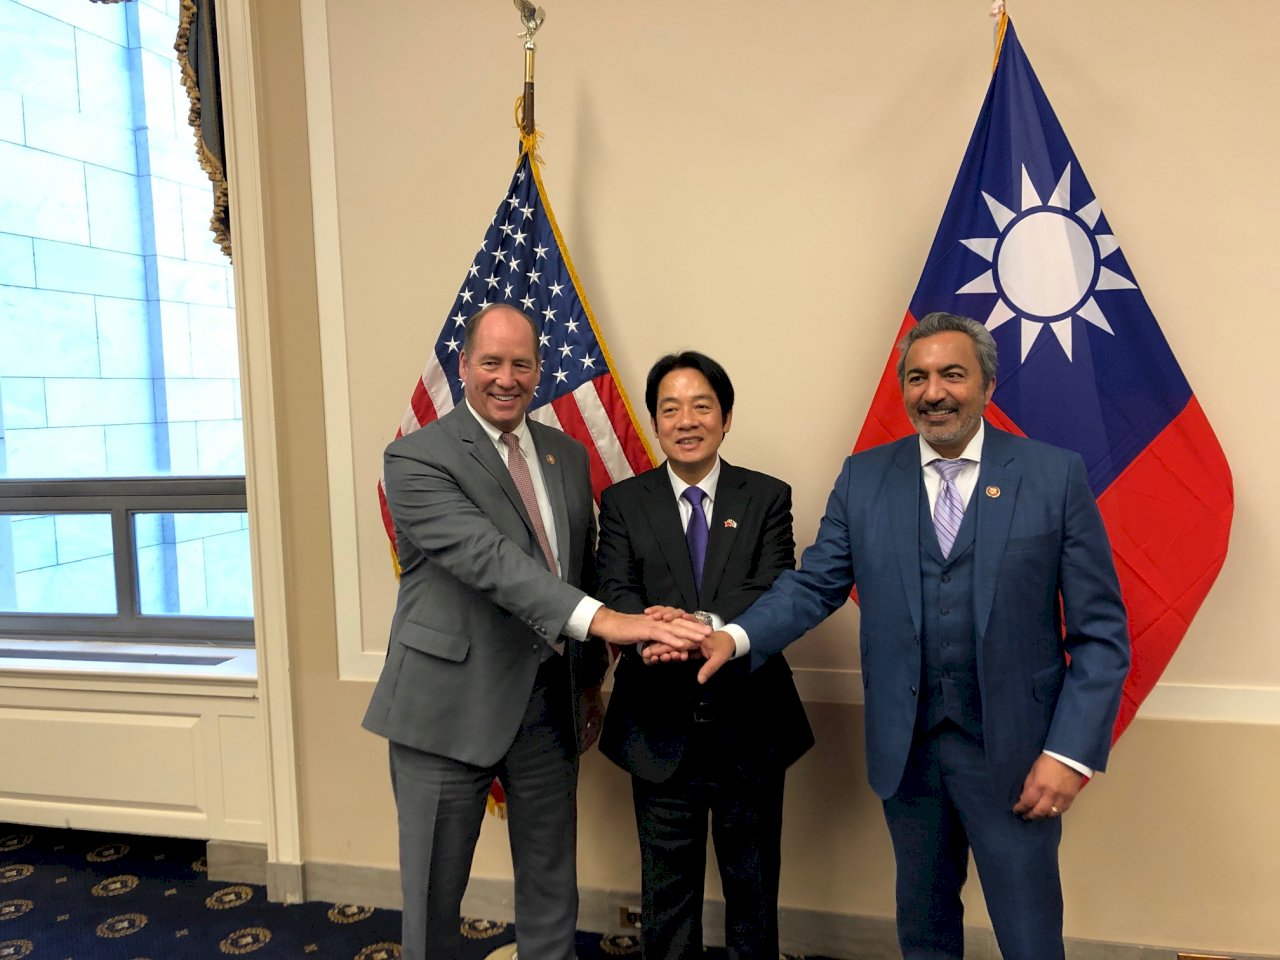 美議員分享與賴清德合照 讚台灣是美國強健夥伴